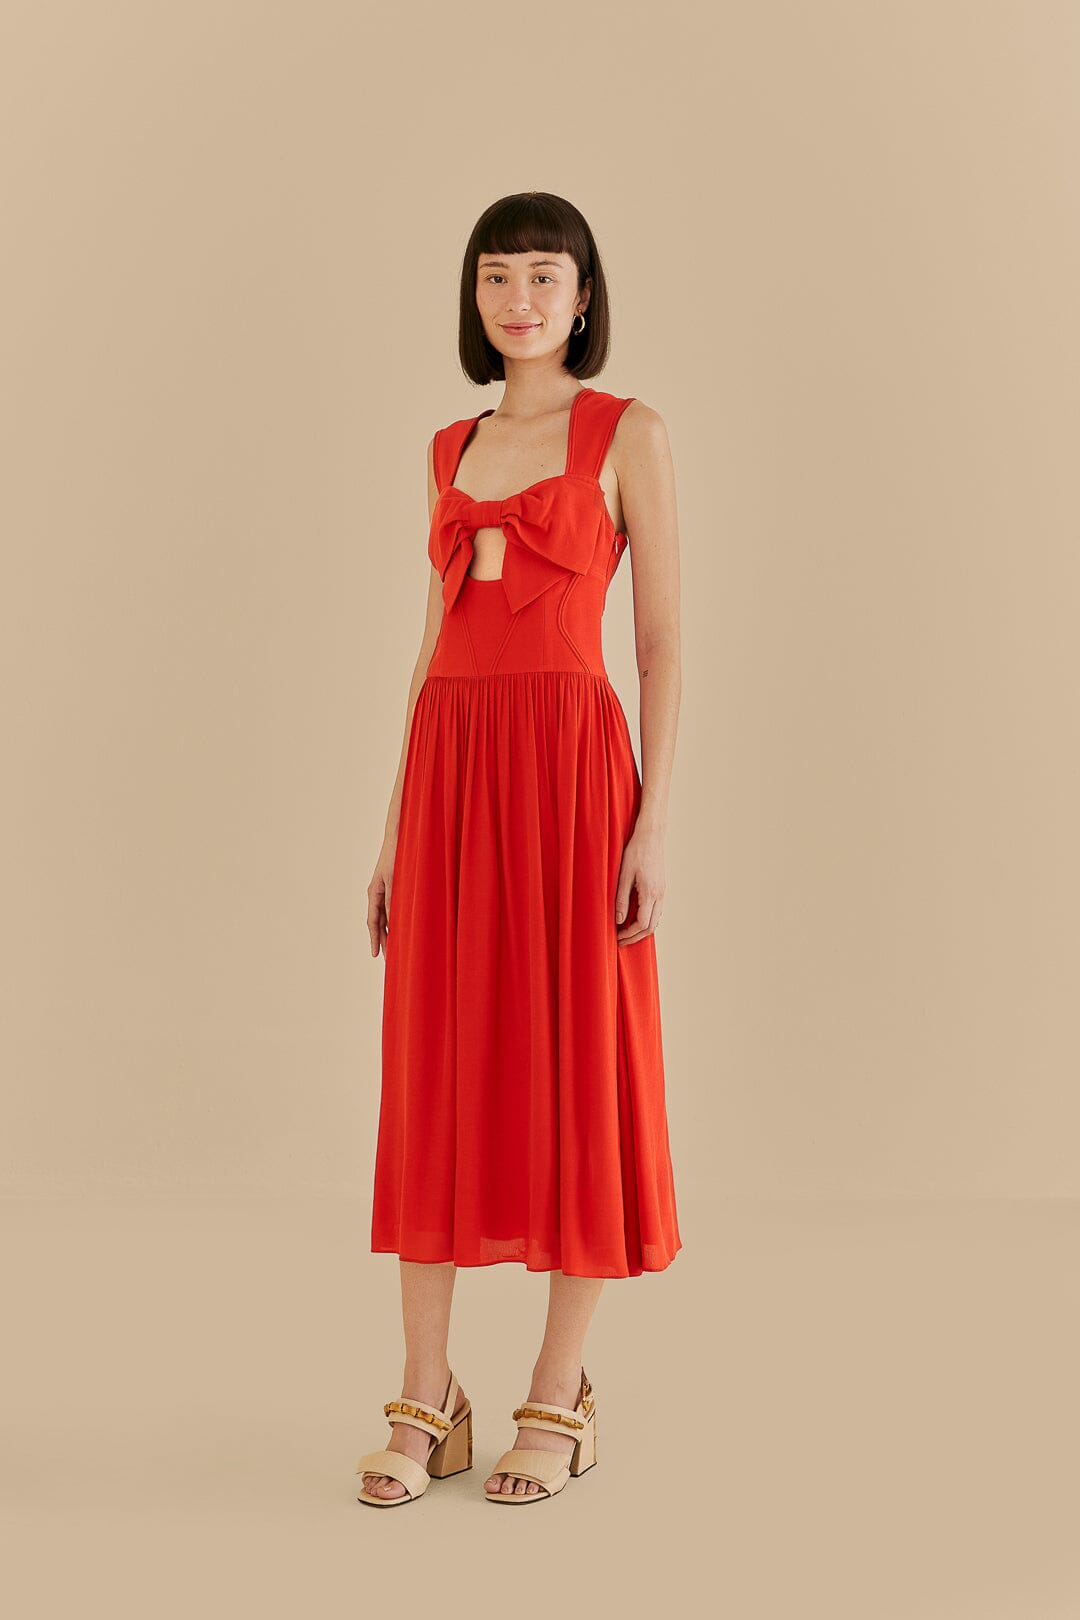 FOREVER 21 Women Bodycon Red Dress - Buy FOREVER 21 Women Bodycon Red Dress  Online at Best Prices in India | Flipkart.com